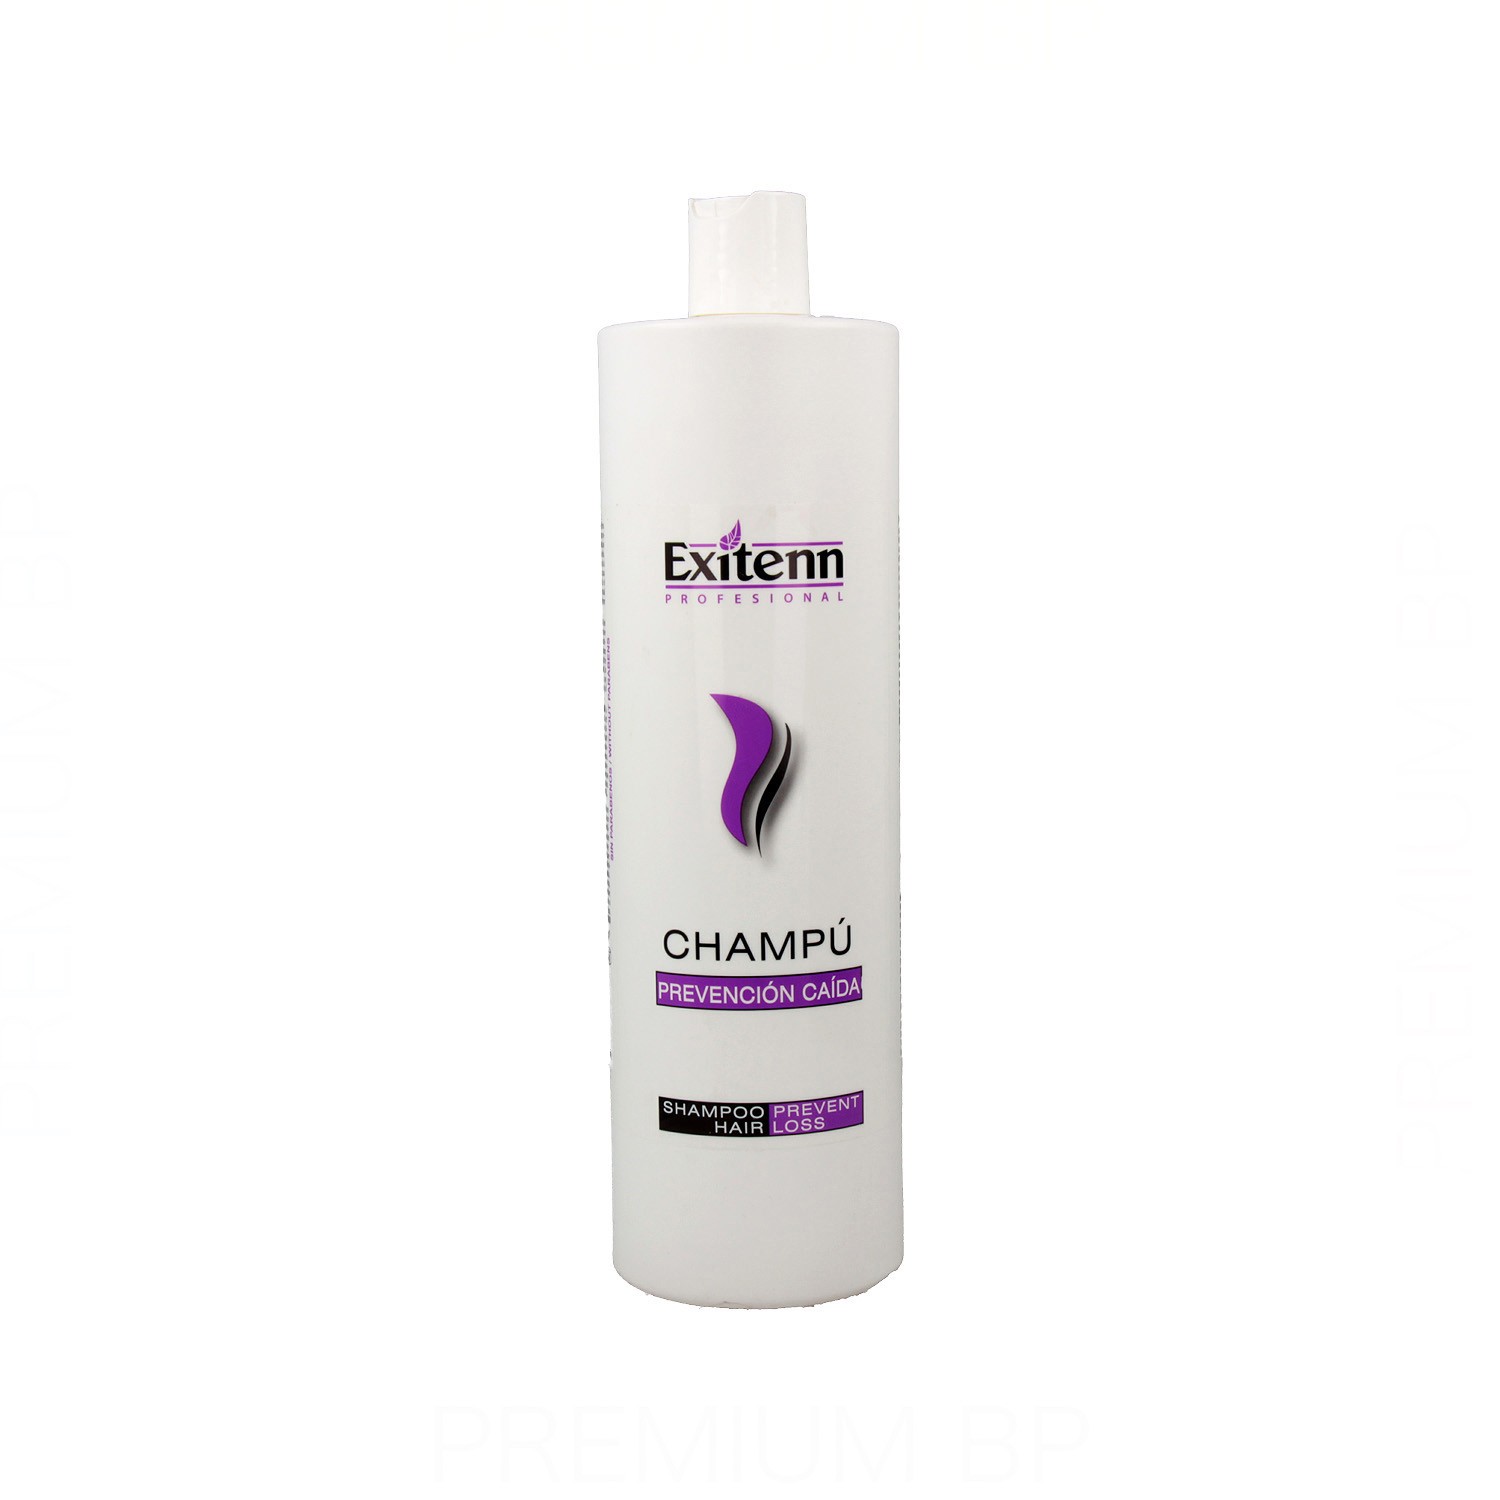 Exitenn - Exitenn prevencion caida champú 1000 ml, champú anticaída. Belleza y cuidado de tu cabello y tu piel con Exitenn.